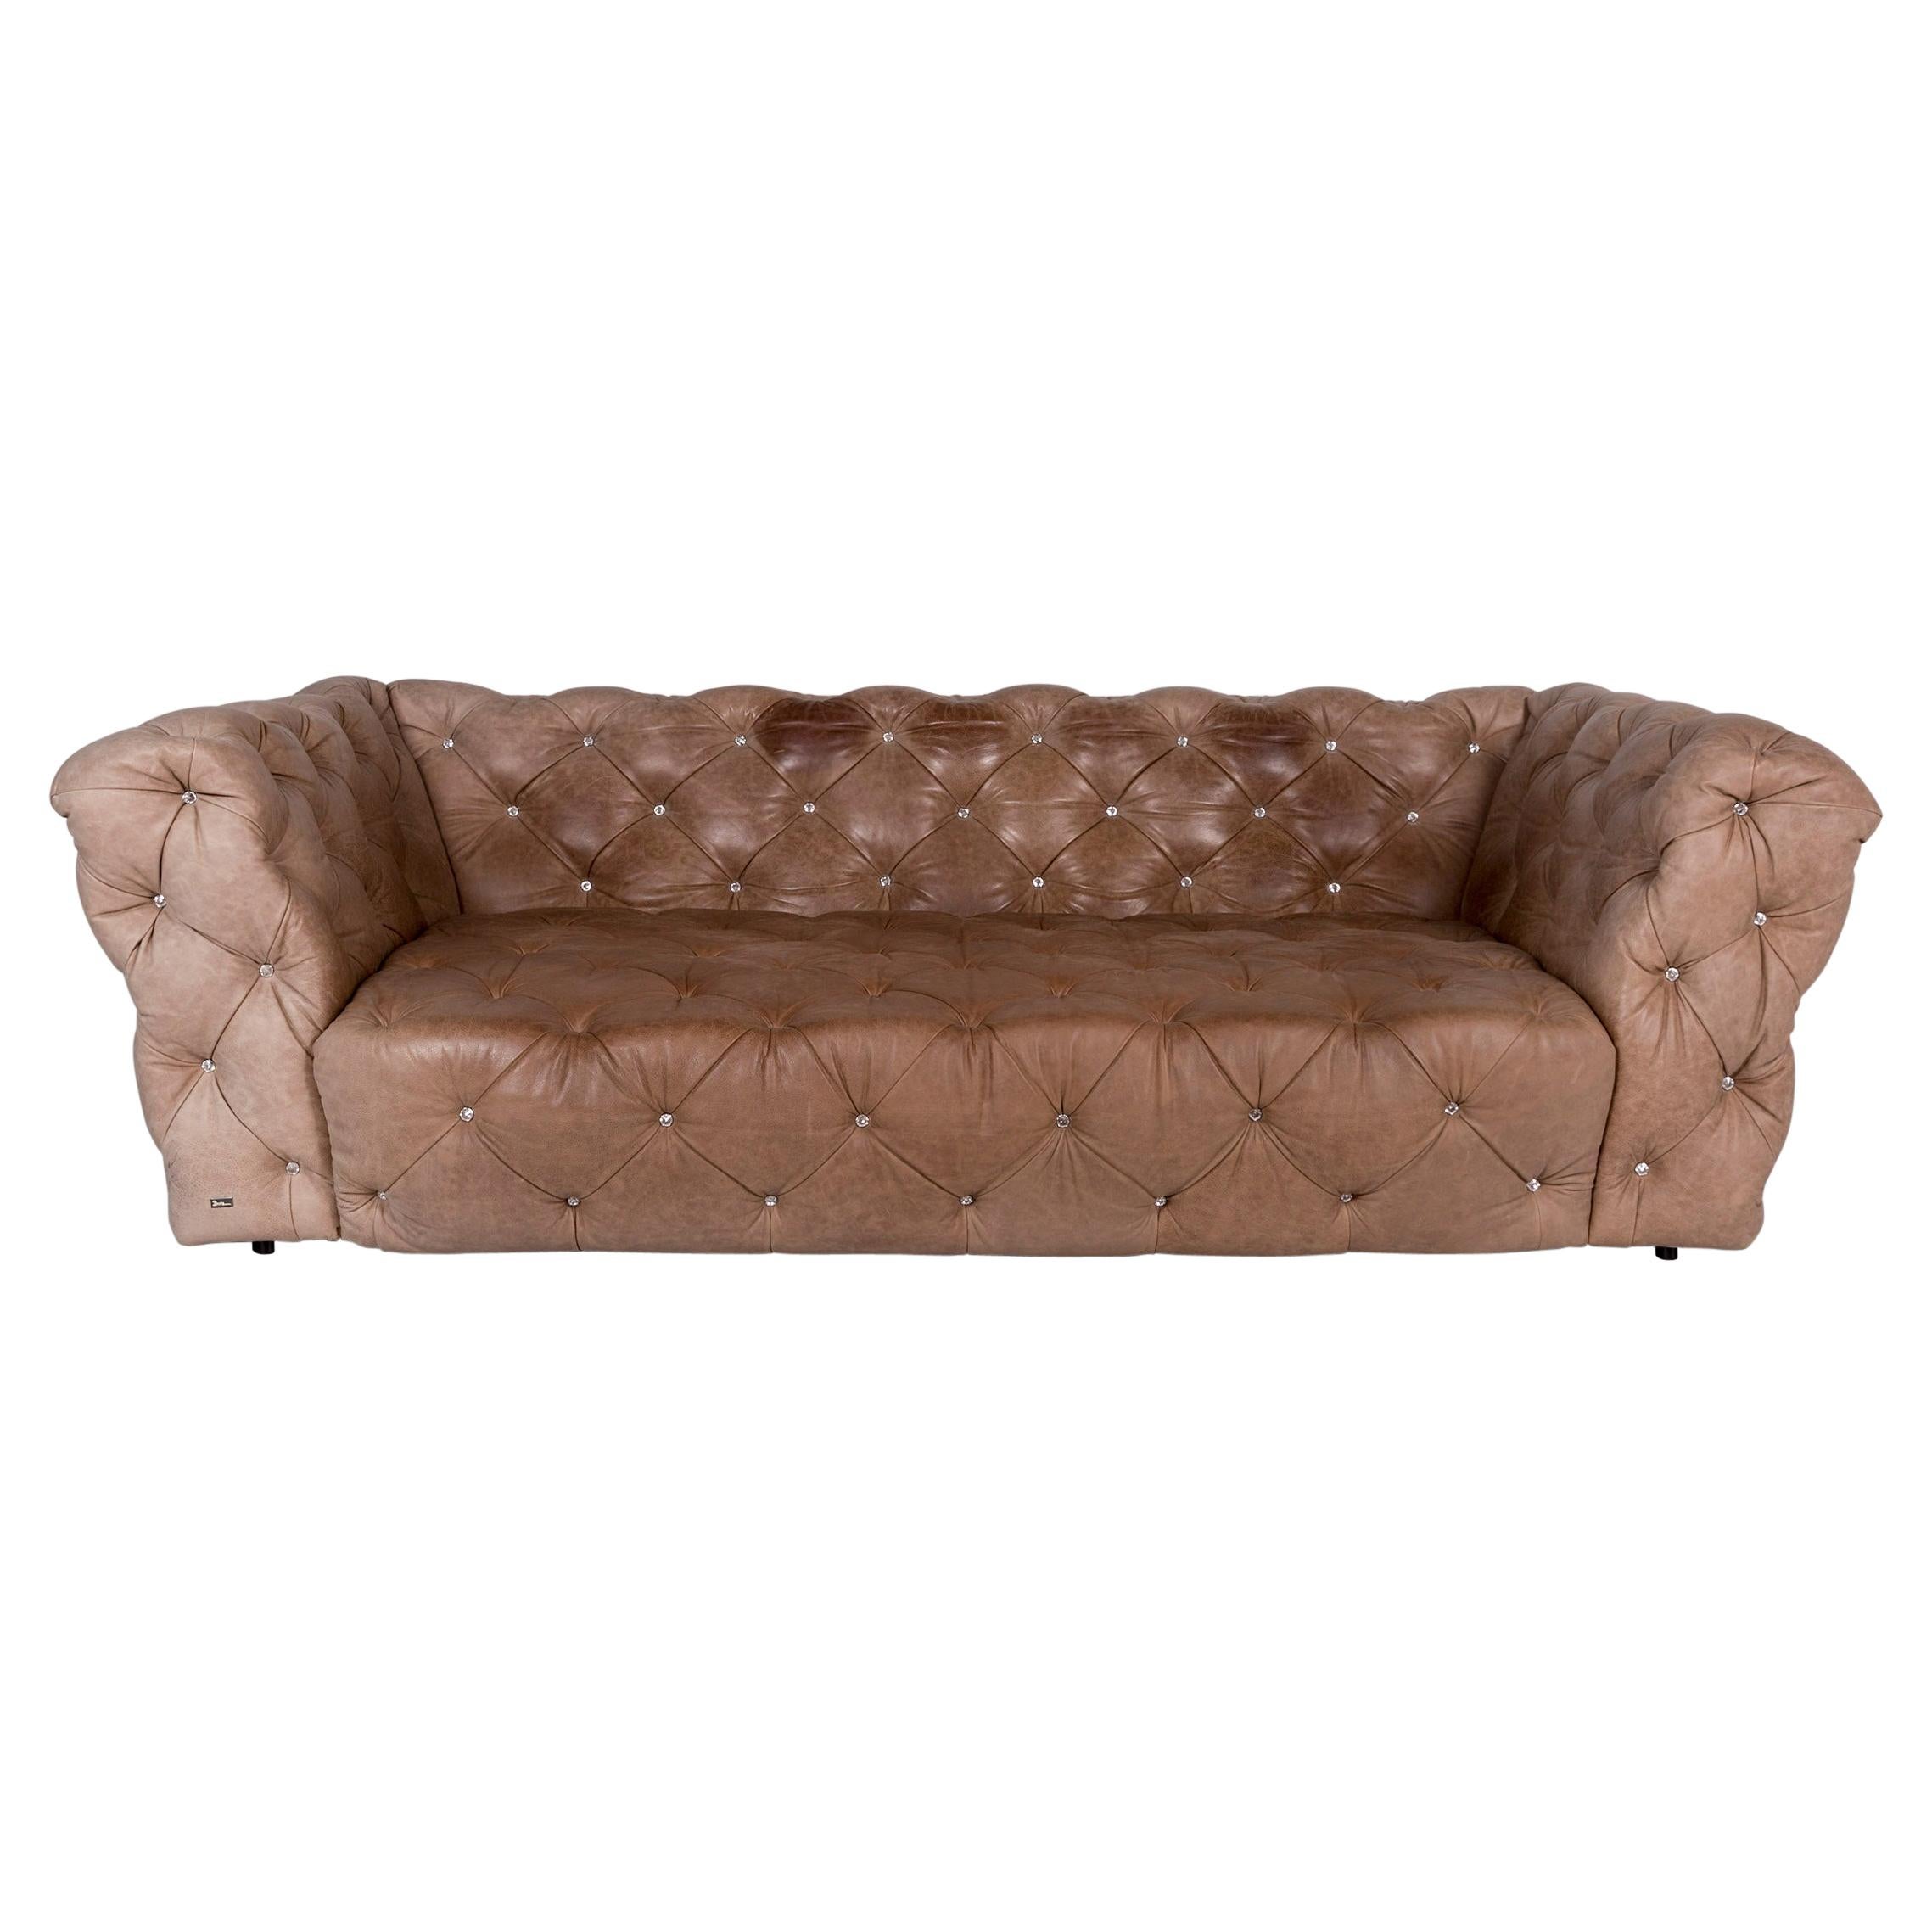 Bretz Marilyn Leather Sofa Brown Three-Seat Kaptionierung Glitterstones For Sale